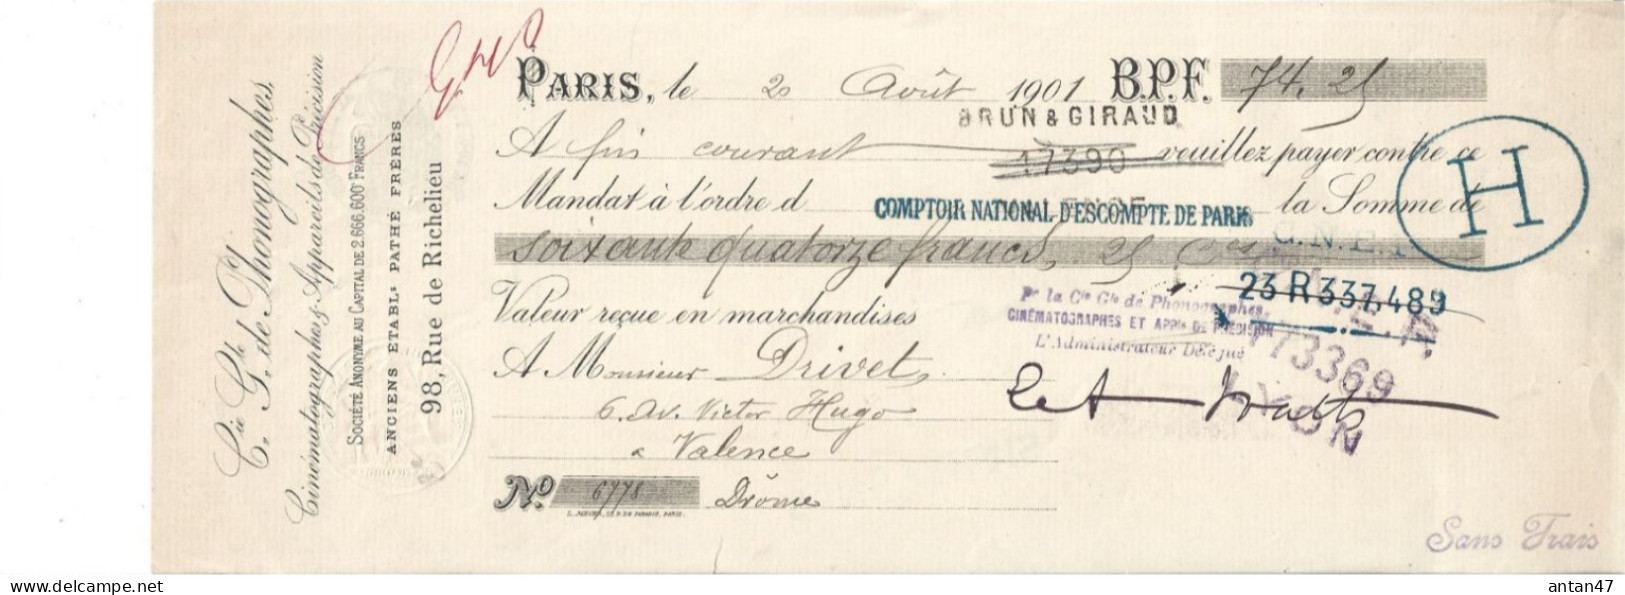 Traite 1901 / 75001 PARIS / Cie Des Phonographes, Cinématographes & Appareils De Précision - Lettres De Change